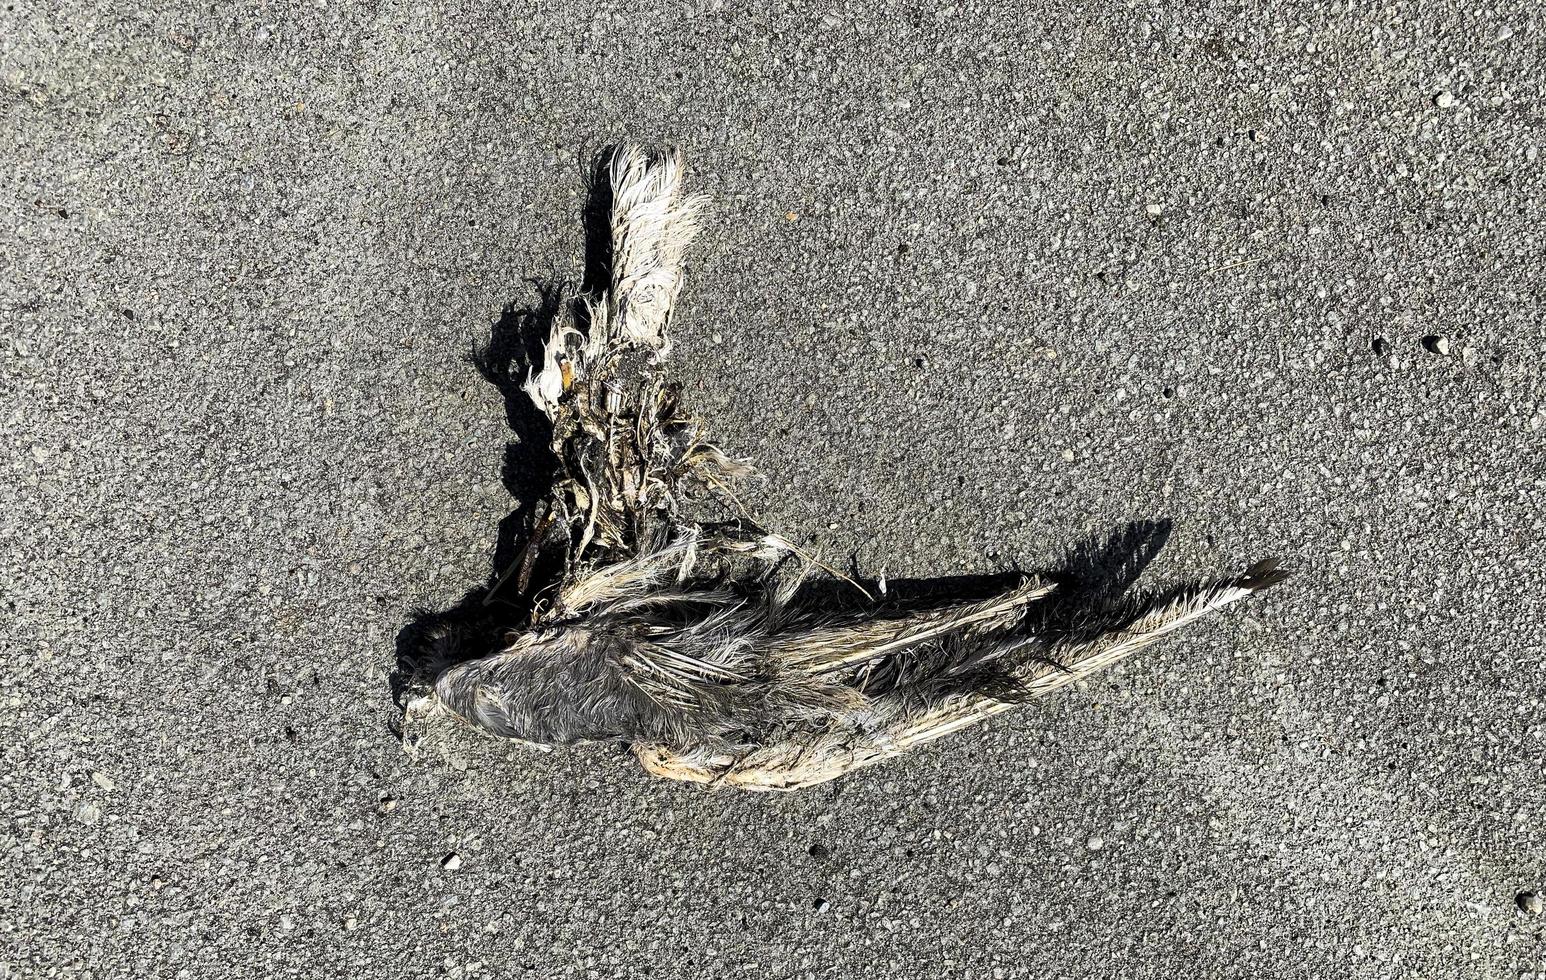 en flygande fågels olyckliga död. svälja. liket efter döden en vecka senare. foto